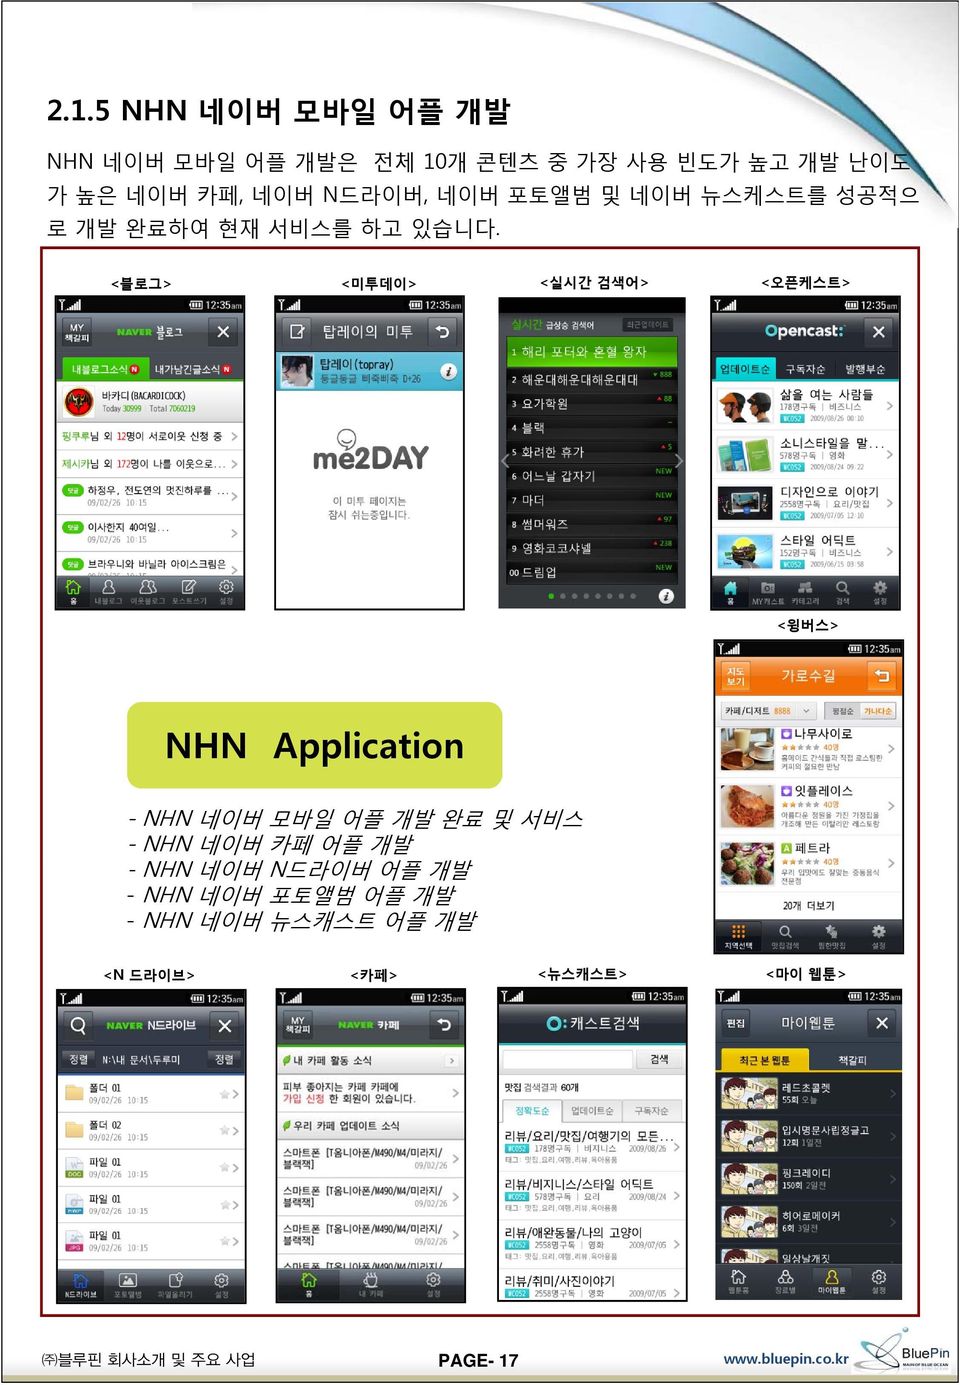 <블로그> <미투데이> <실시간 검색어> <오픈케스트> <윙버스> NHN Application - NHN 네이버 모바일 어플 개발 완료 및 서비스 - NHN